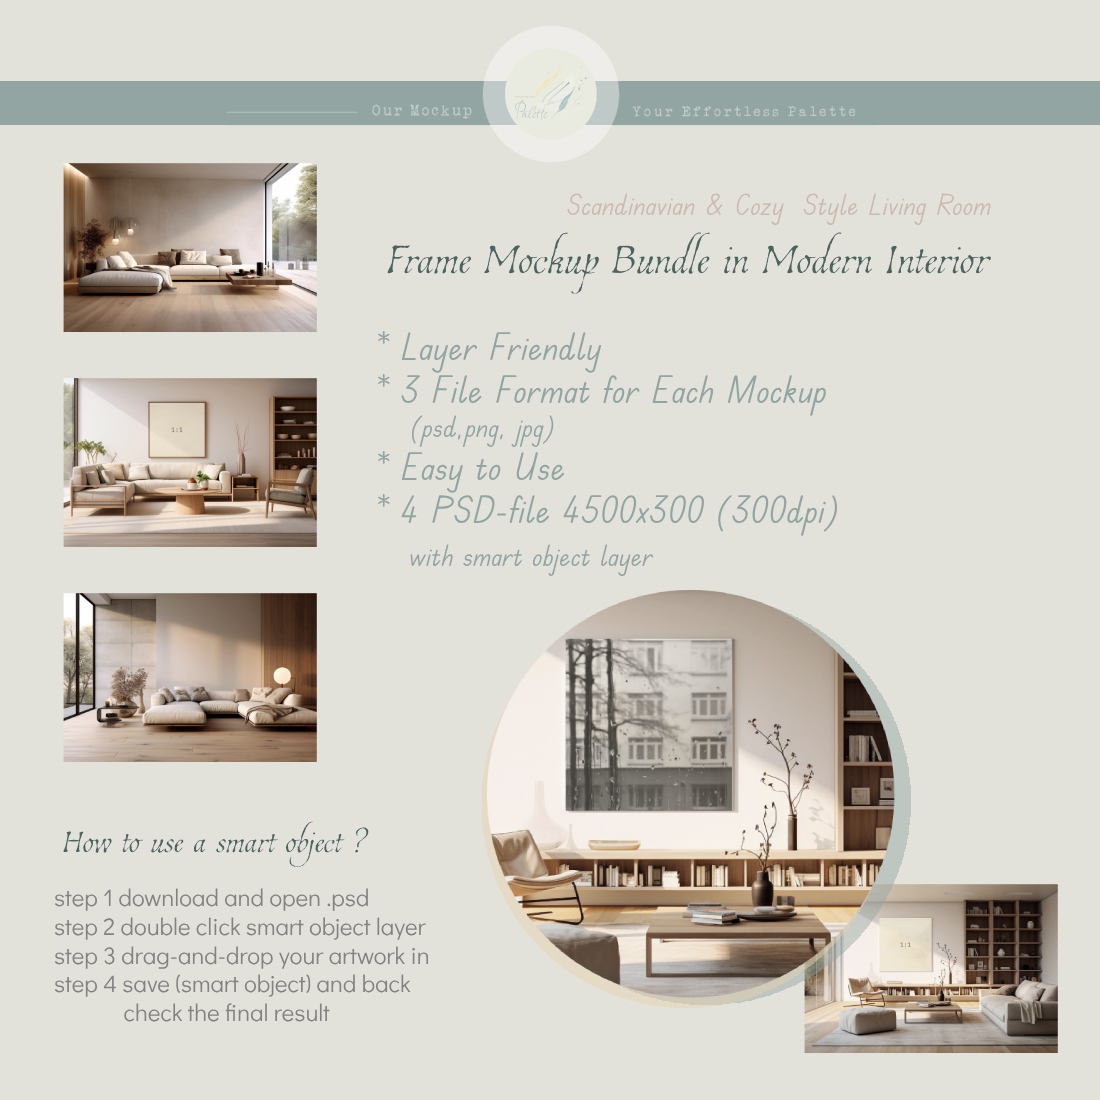 Four Frame Mockup Bundle, modern interior living room, jpg png & psd w/ smart object preview image.